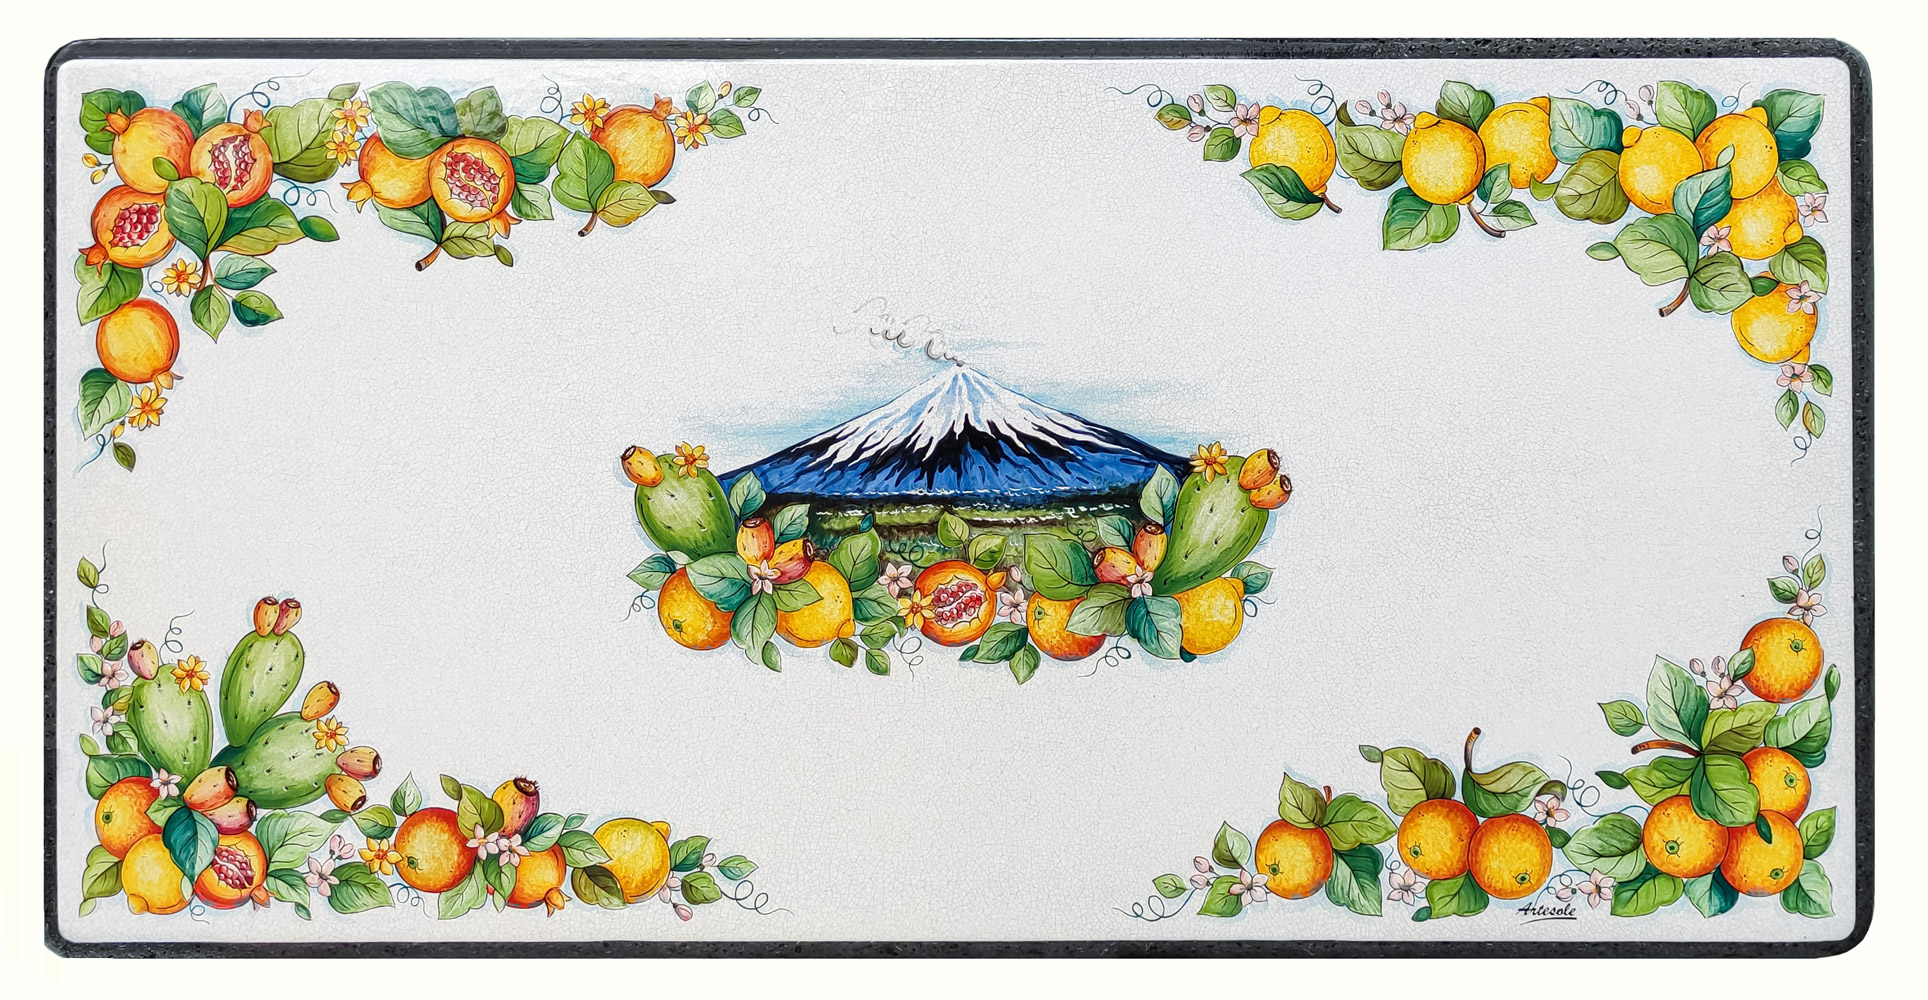 tavolo in pietra lavica decorato etna limone arance melograno fichi d india